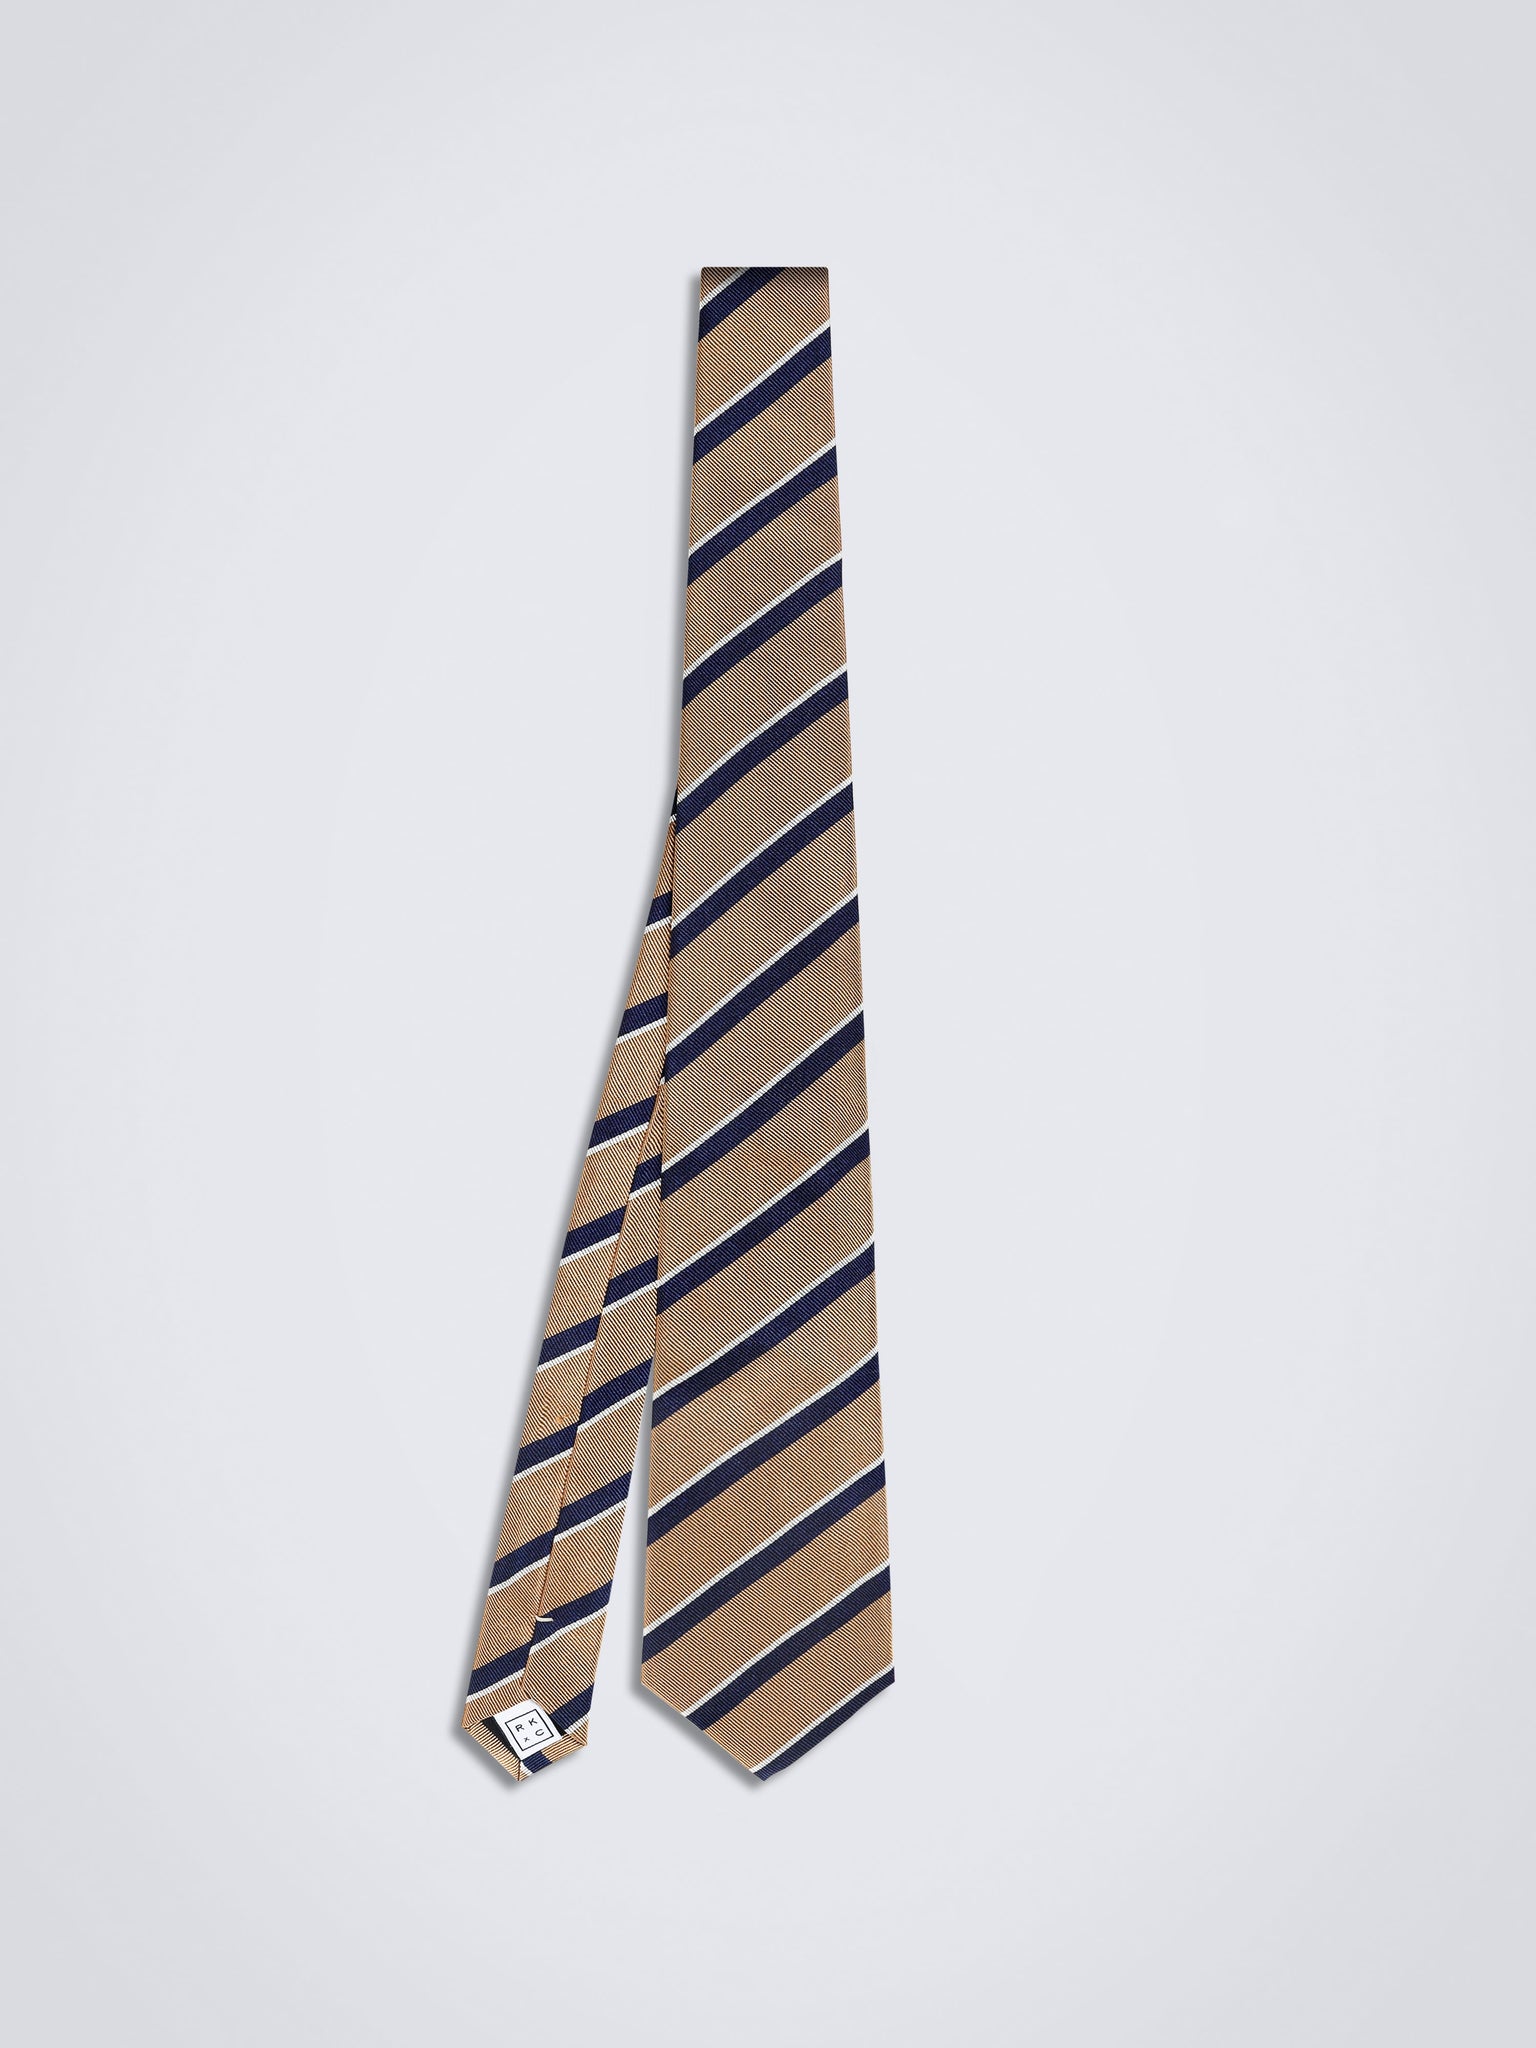 Chokore Repp Tie (Tan) Necktie